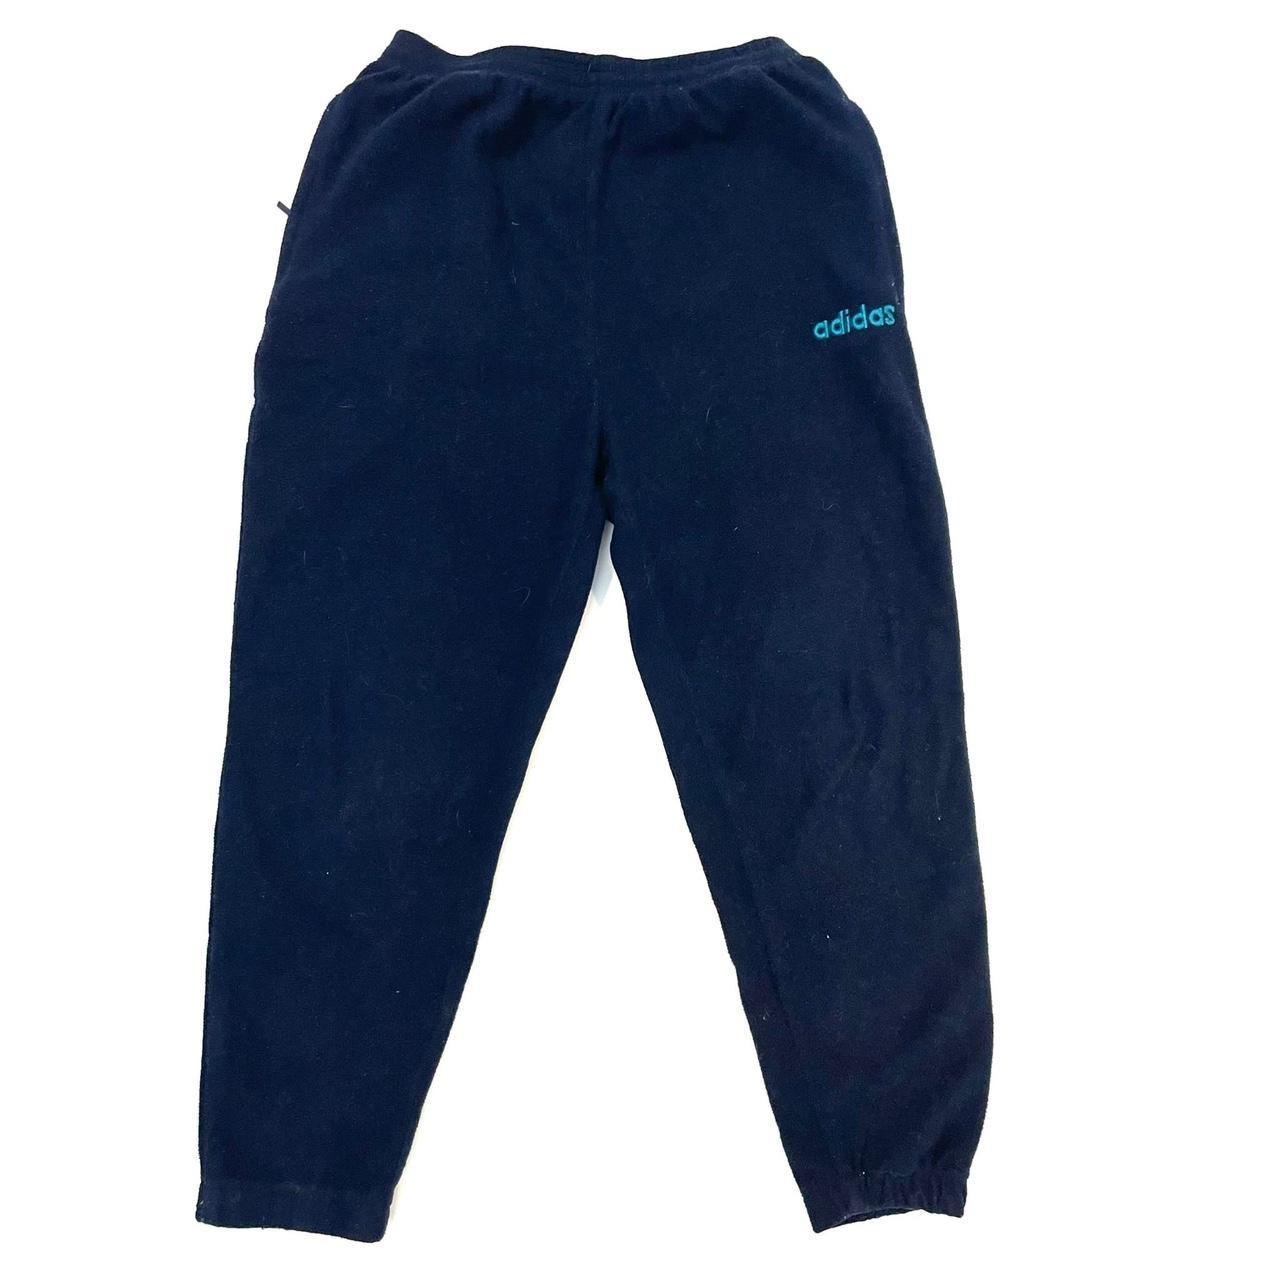 Vintage Adidas Navy Fleece Sweatpants Sportswear 90s... - Depop